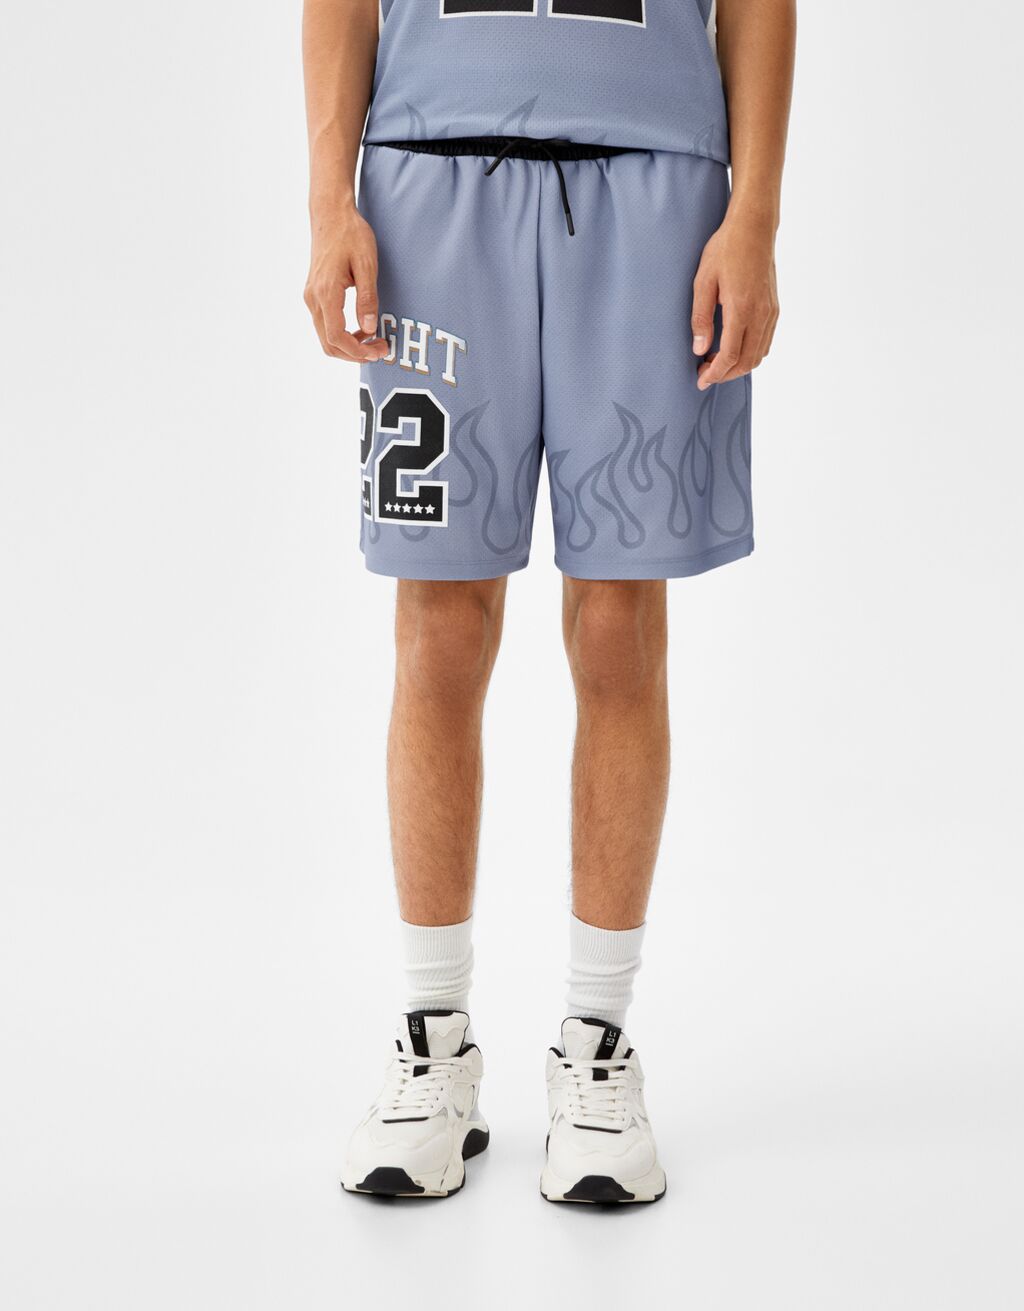 מכנסי ברמודה לכדורסל מבד רשת עם הדפס להבות